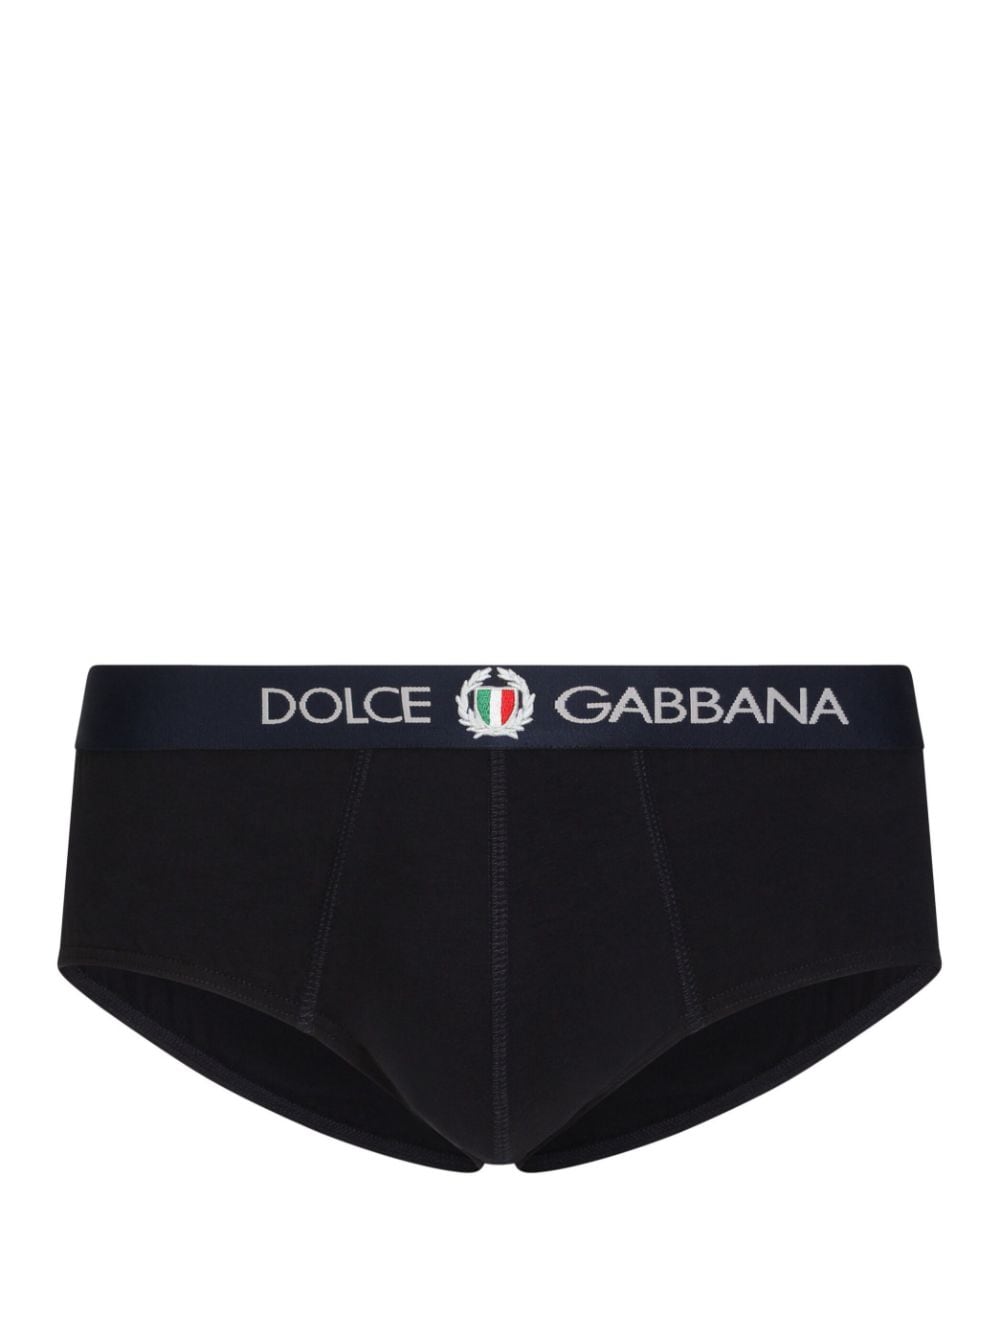 Dolce & Gabbana logo-waistband briefs - Black von Dolce & Gabbana